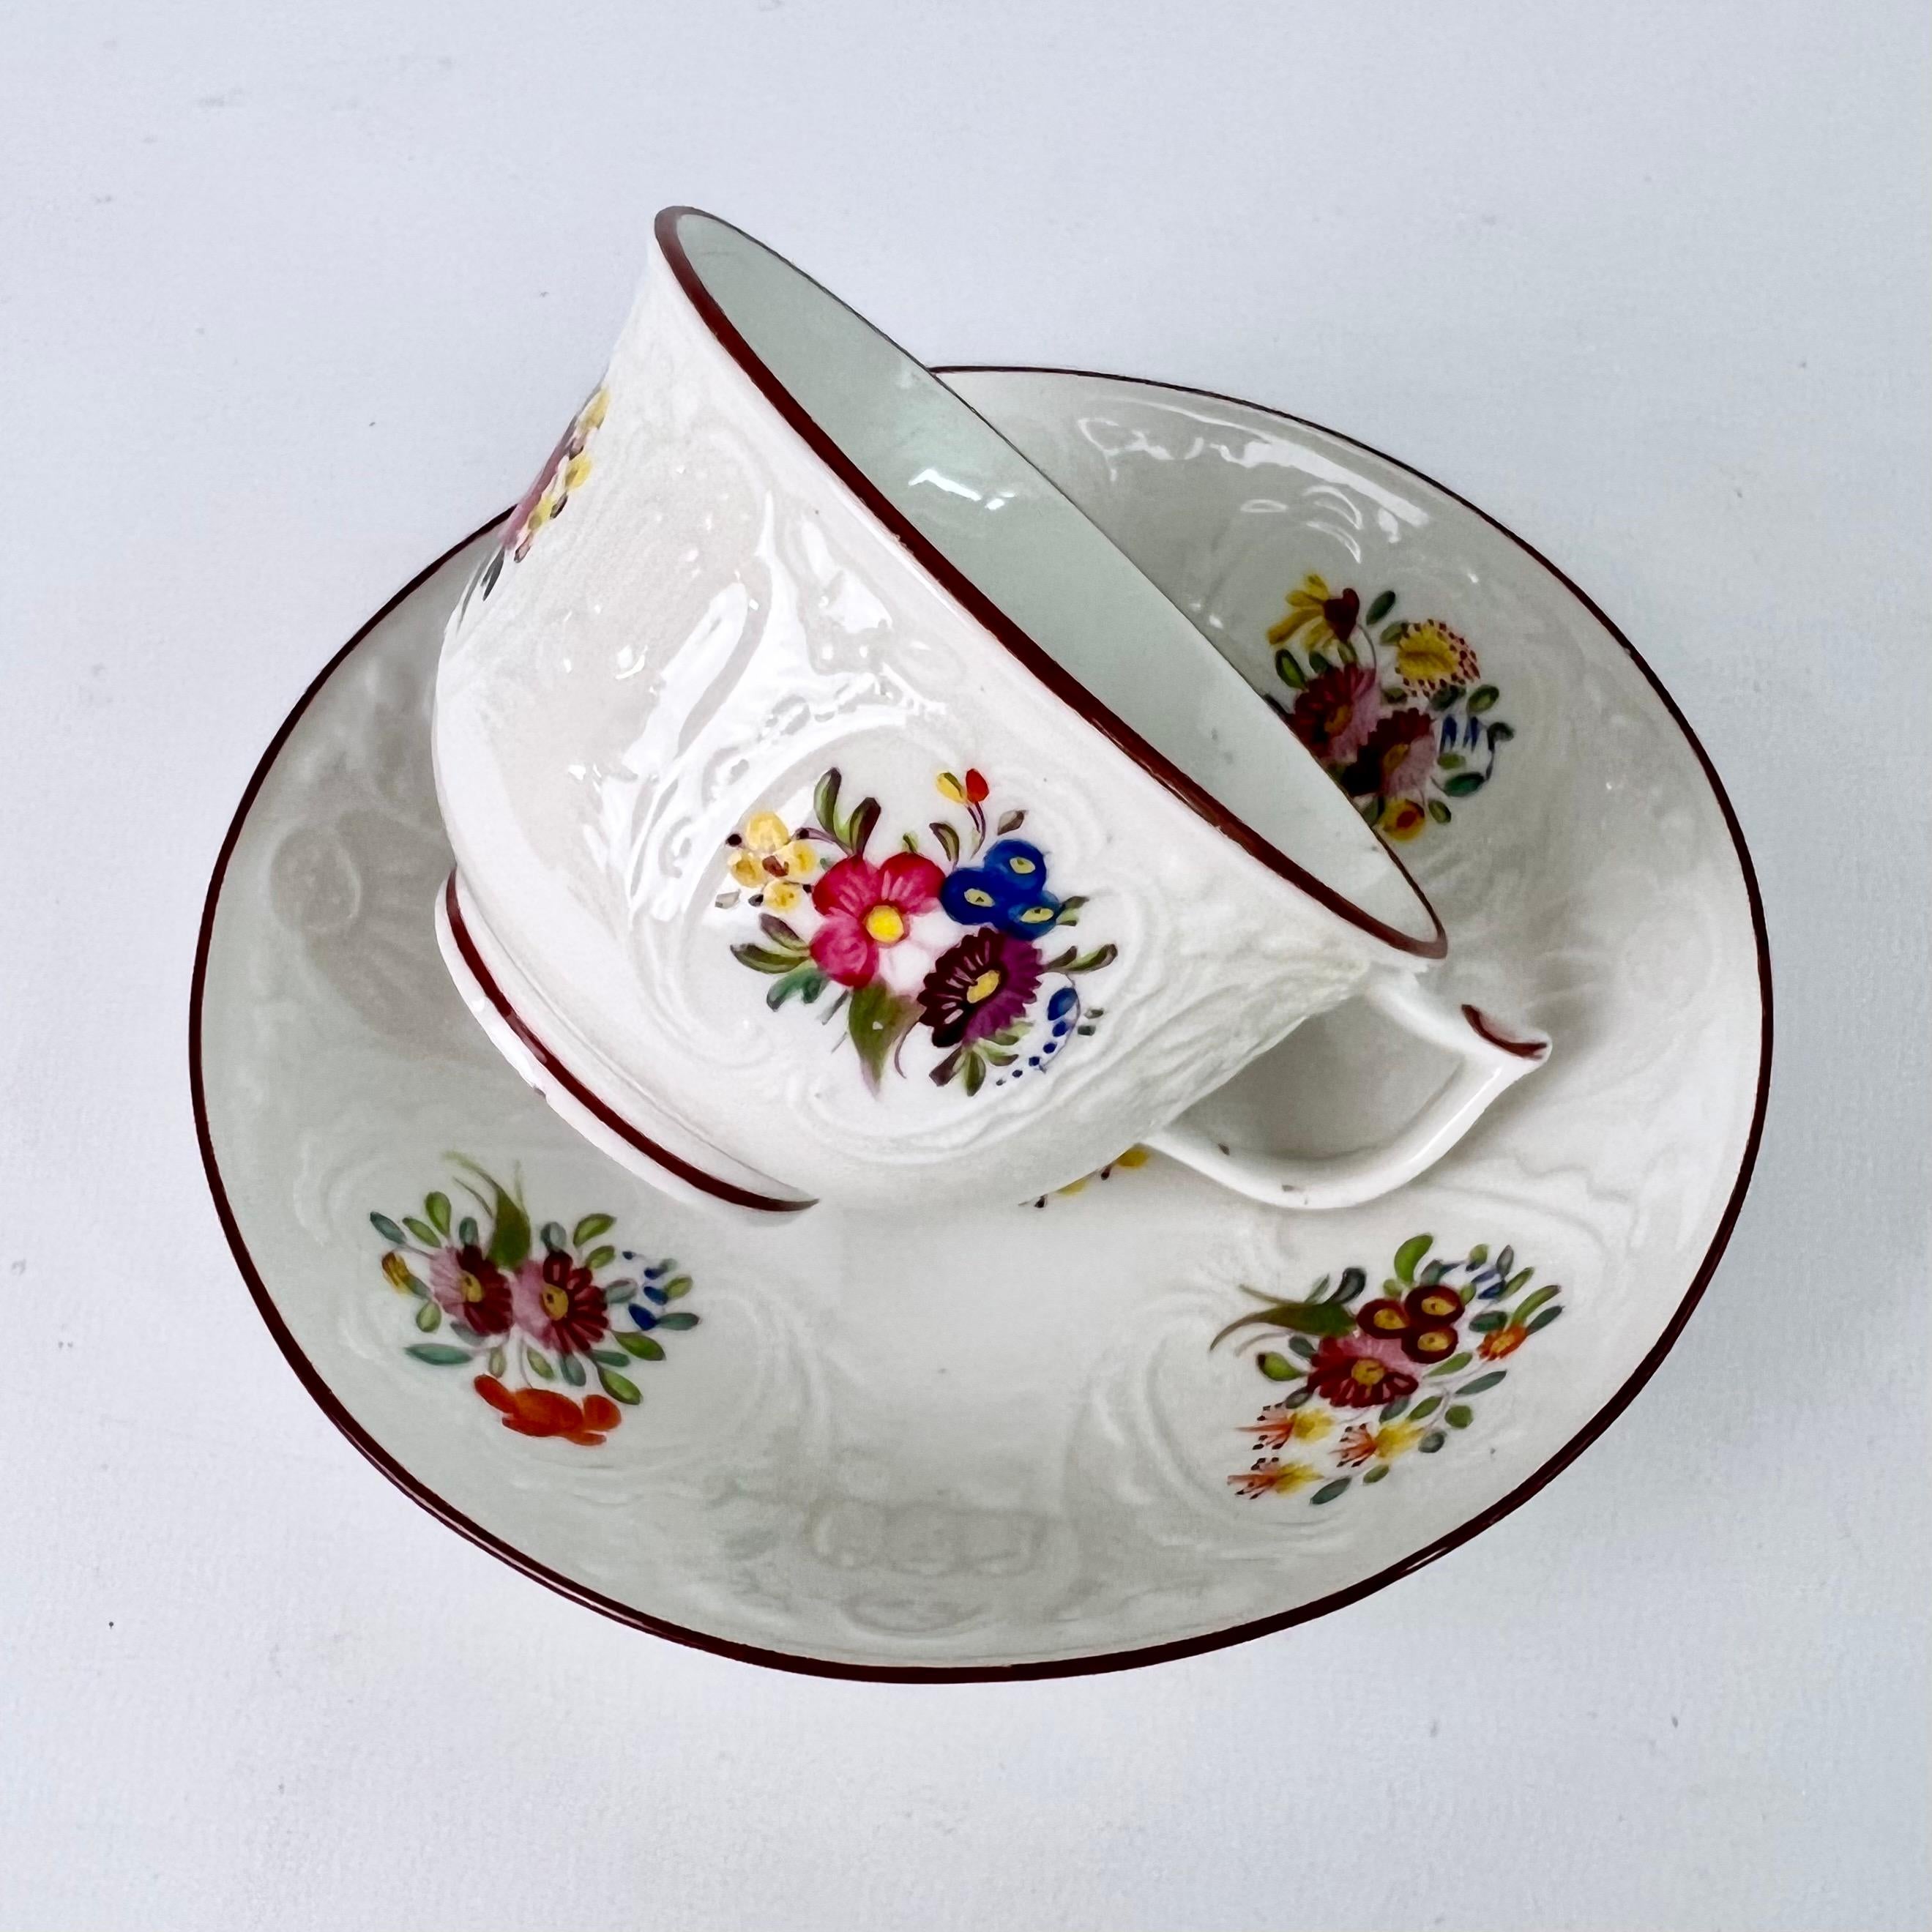 Dies ist eine schöne Teetasse mit Untertasse, die um 1817 in Coalport hergestellt wurde. Die Teetasse ist im Blindgussverfahren mit dem Muster 